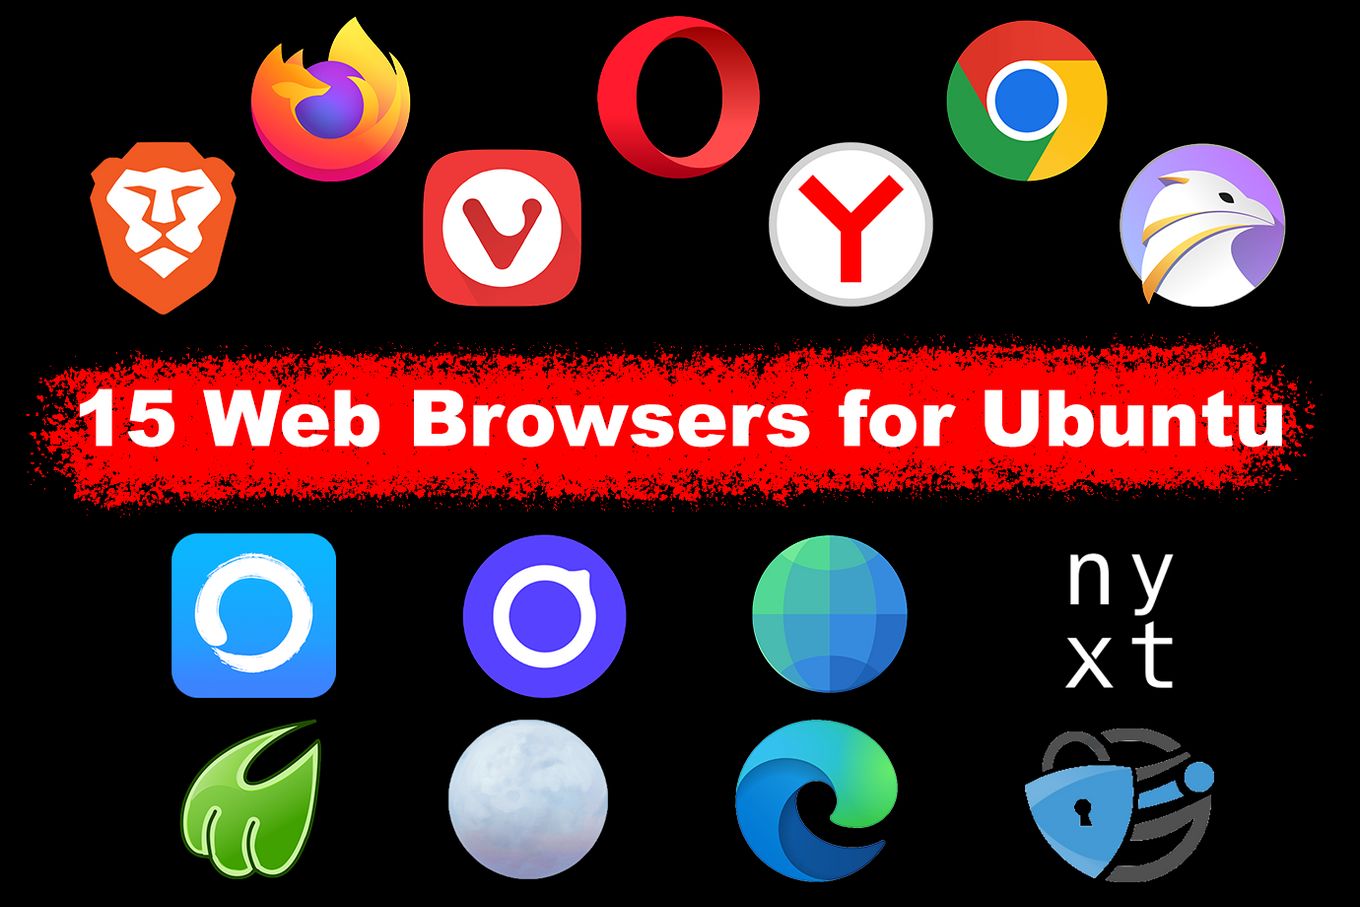 safari browser for ubuntu 18.04